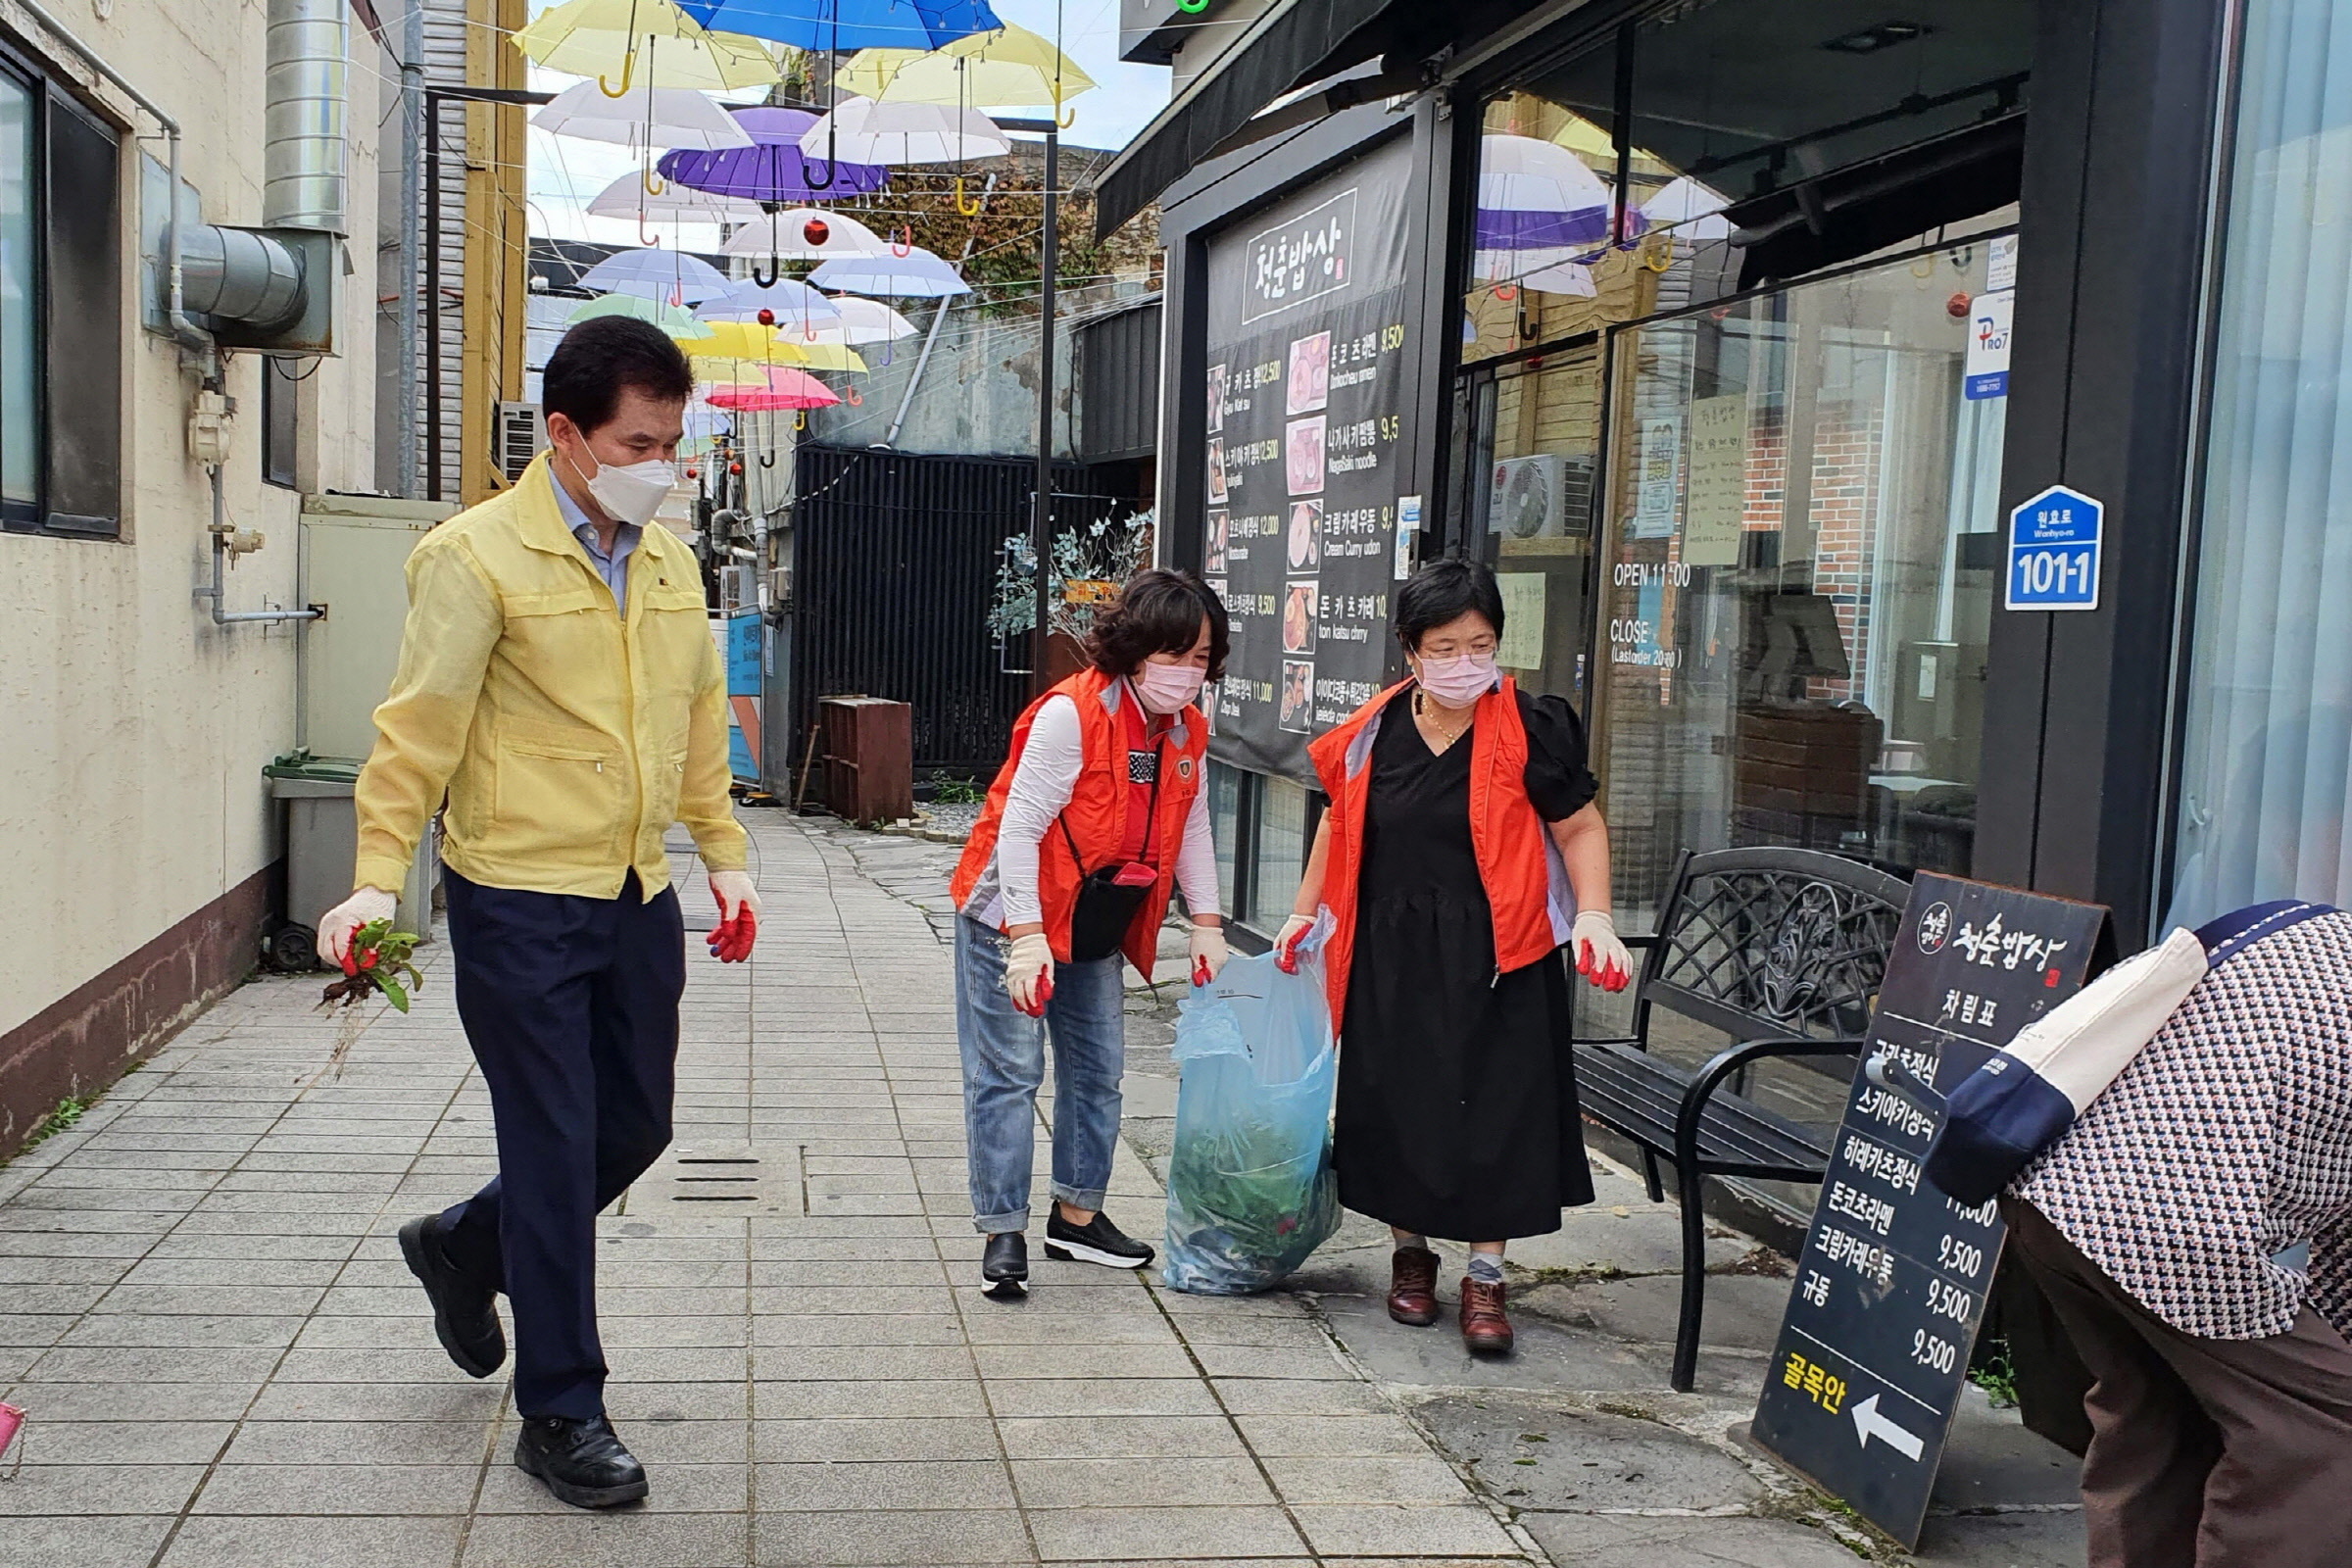 중부동 통장협의회와 박정우 동장이 함께 신라아트마켓 환경정비를 실시하는 모습